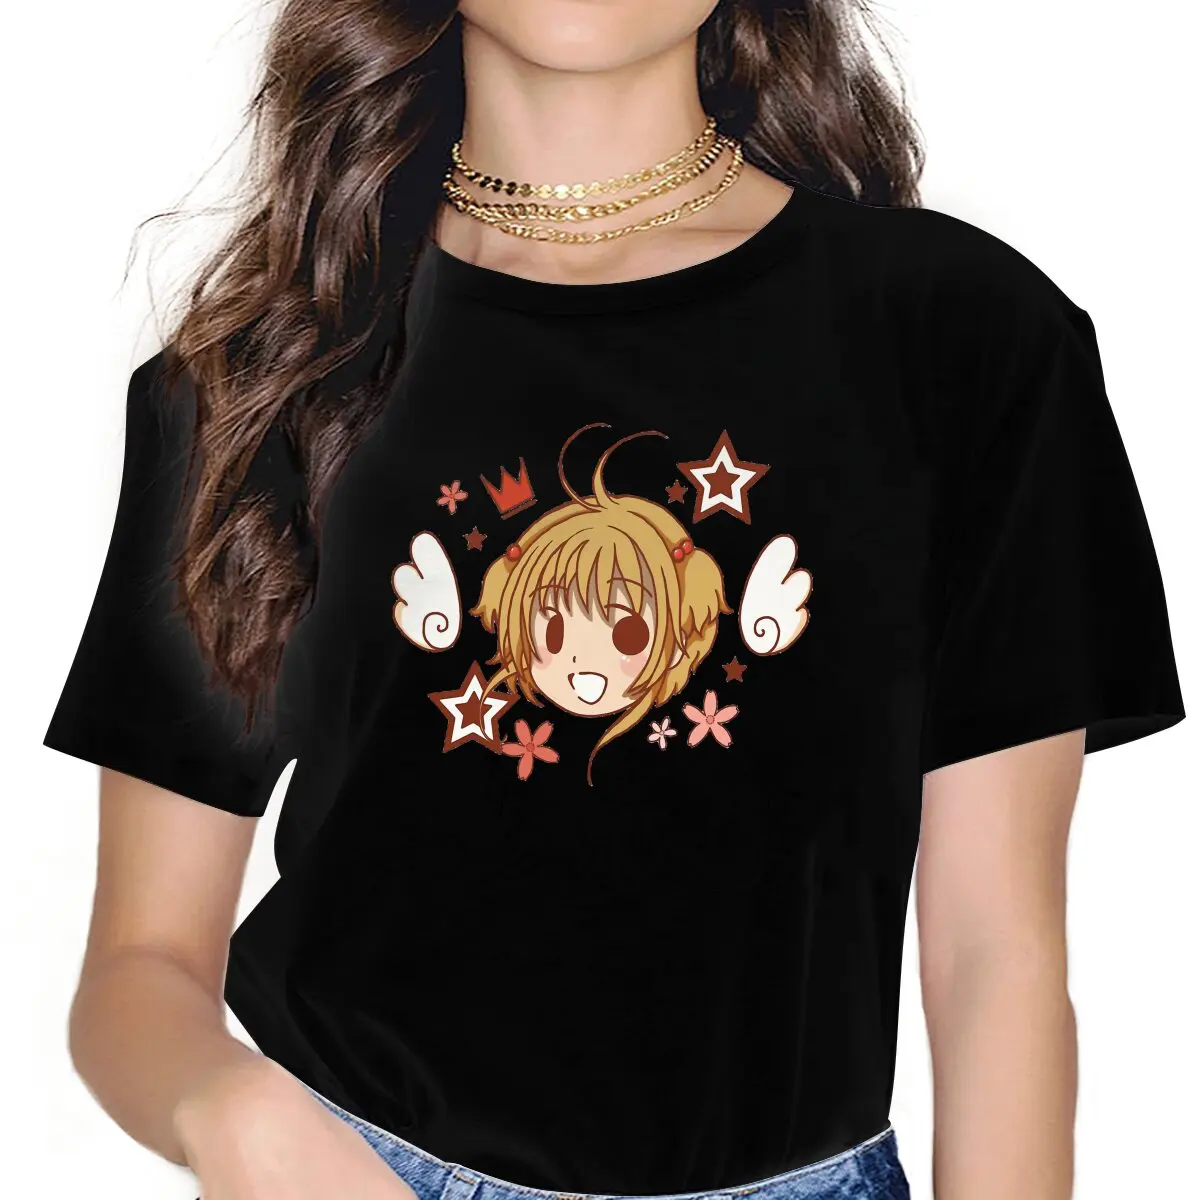 Kawaii Милая женская одежда Cardcaptor Sakura Syaoran Li Женские футболки с аниме графикой CCS, винтажные готические свободные топы, футболки